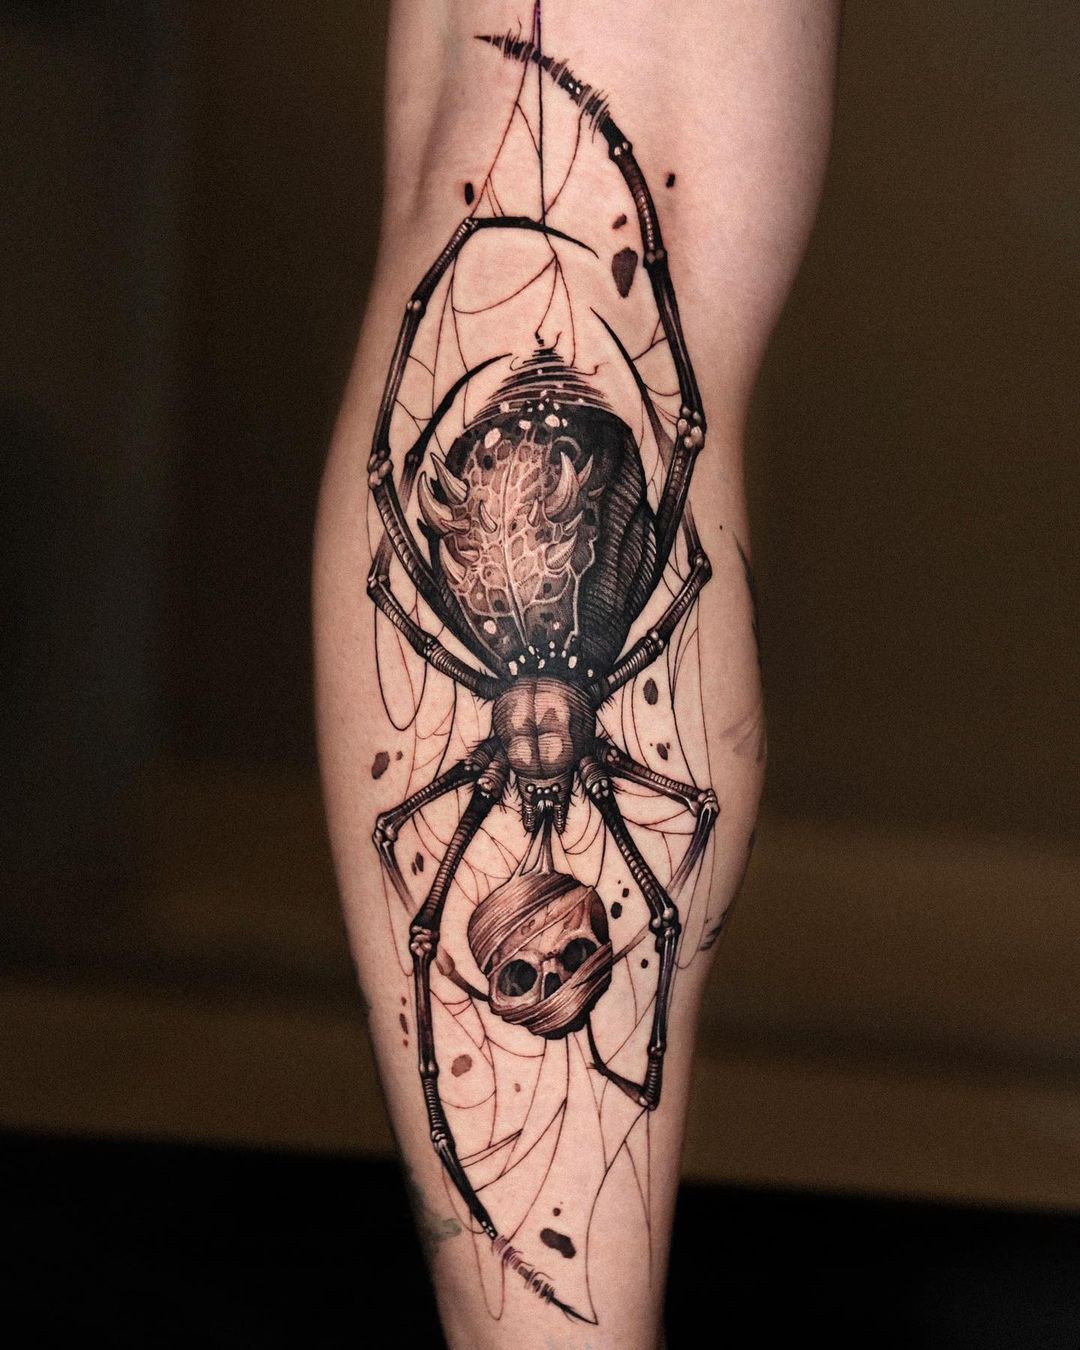 Spider tattoo by apso tattoo